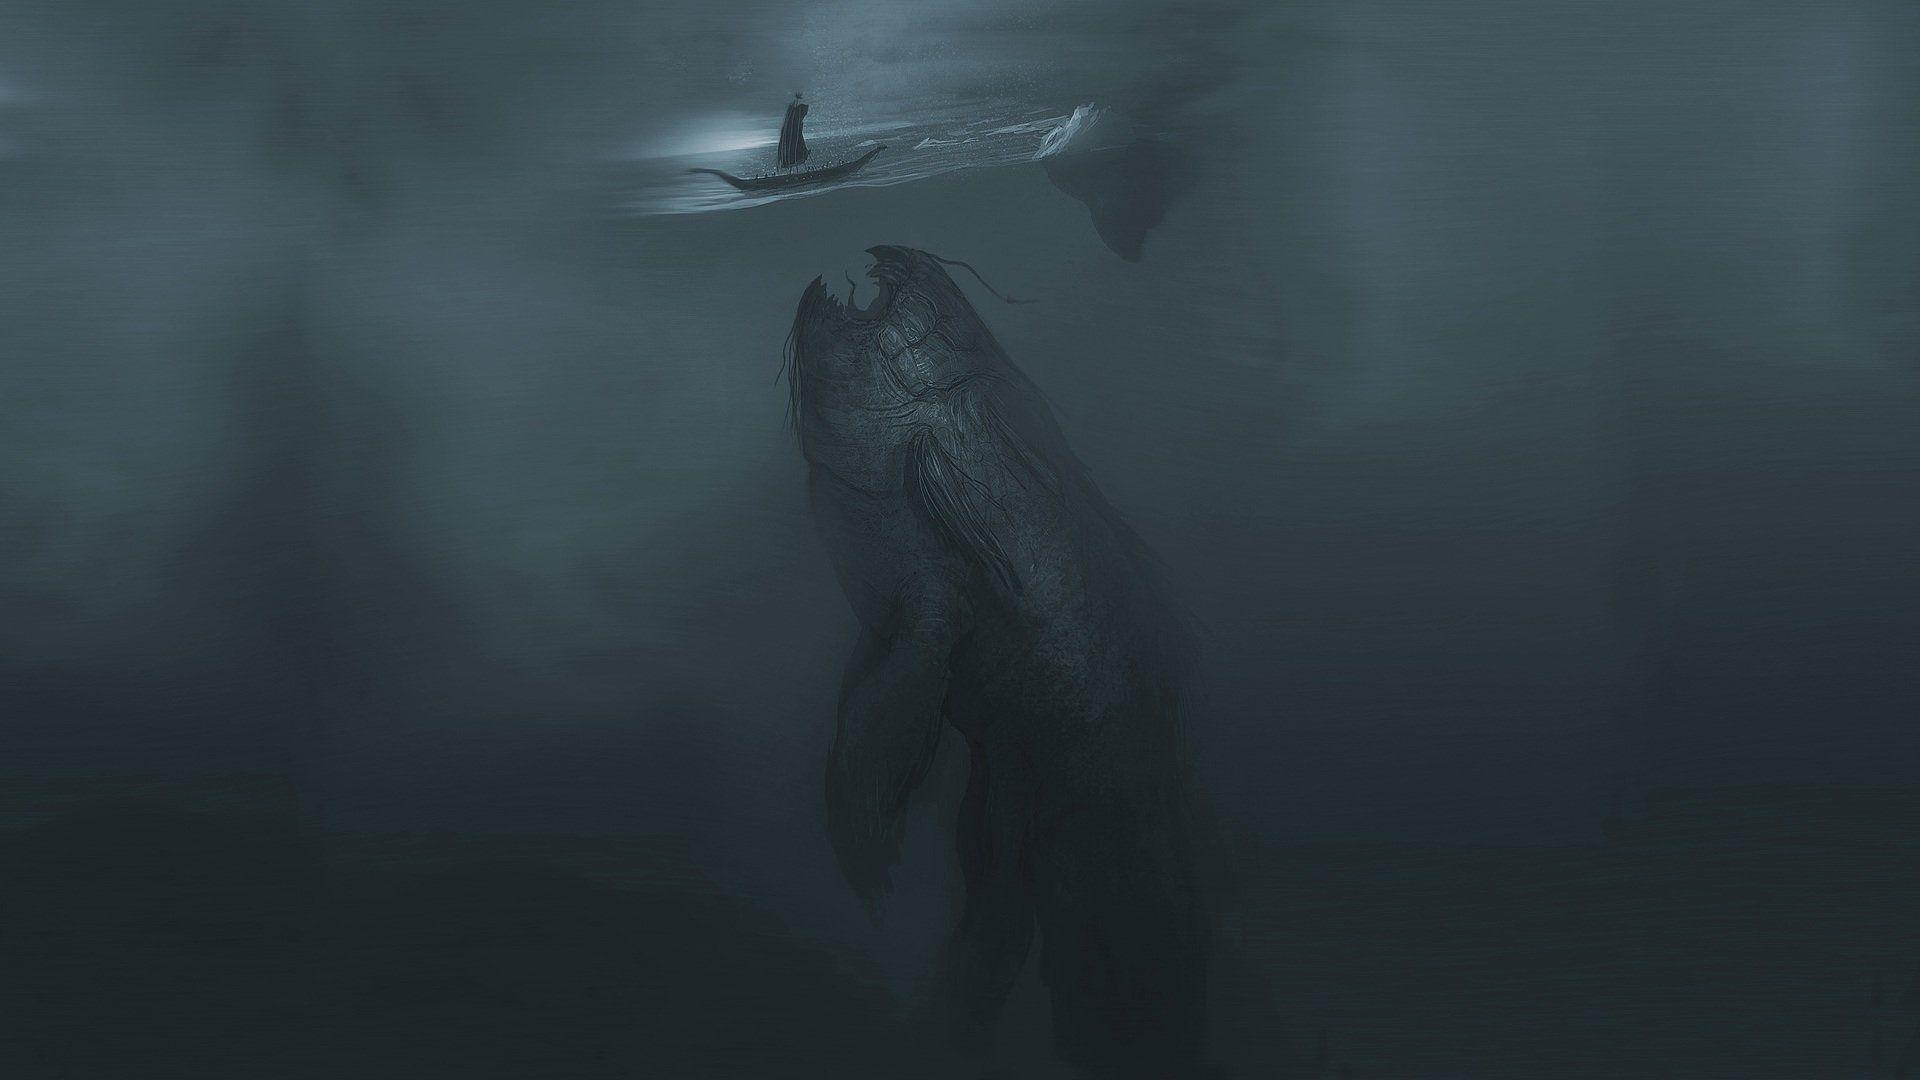 Sea Monster Underwater Creature Wallpapers